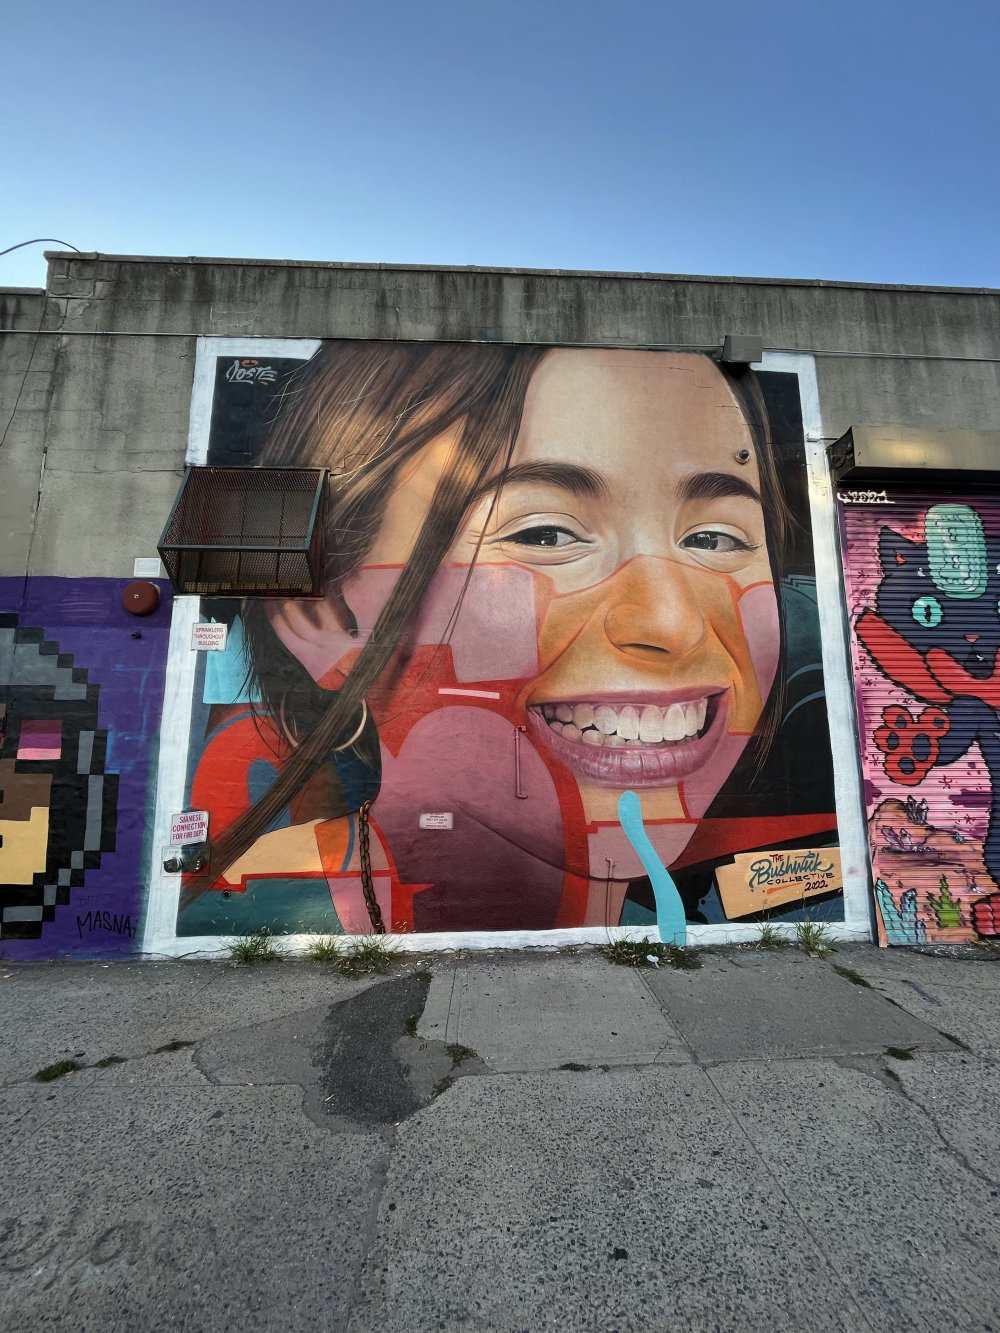 mural in Brooklyn by artist Rosk & Loste.